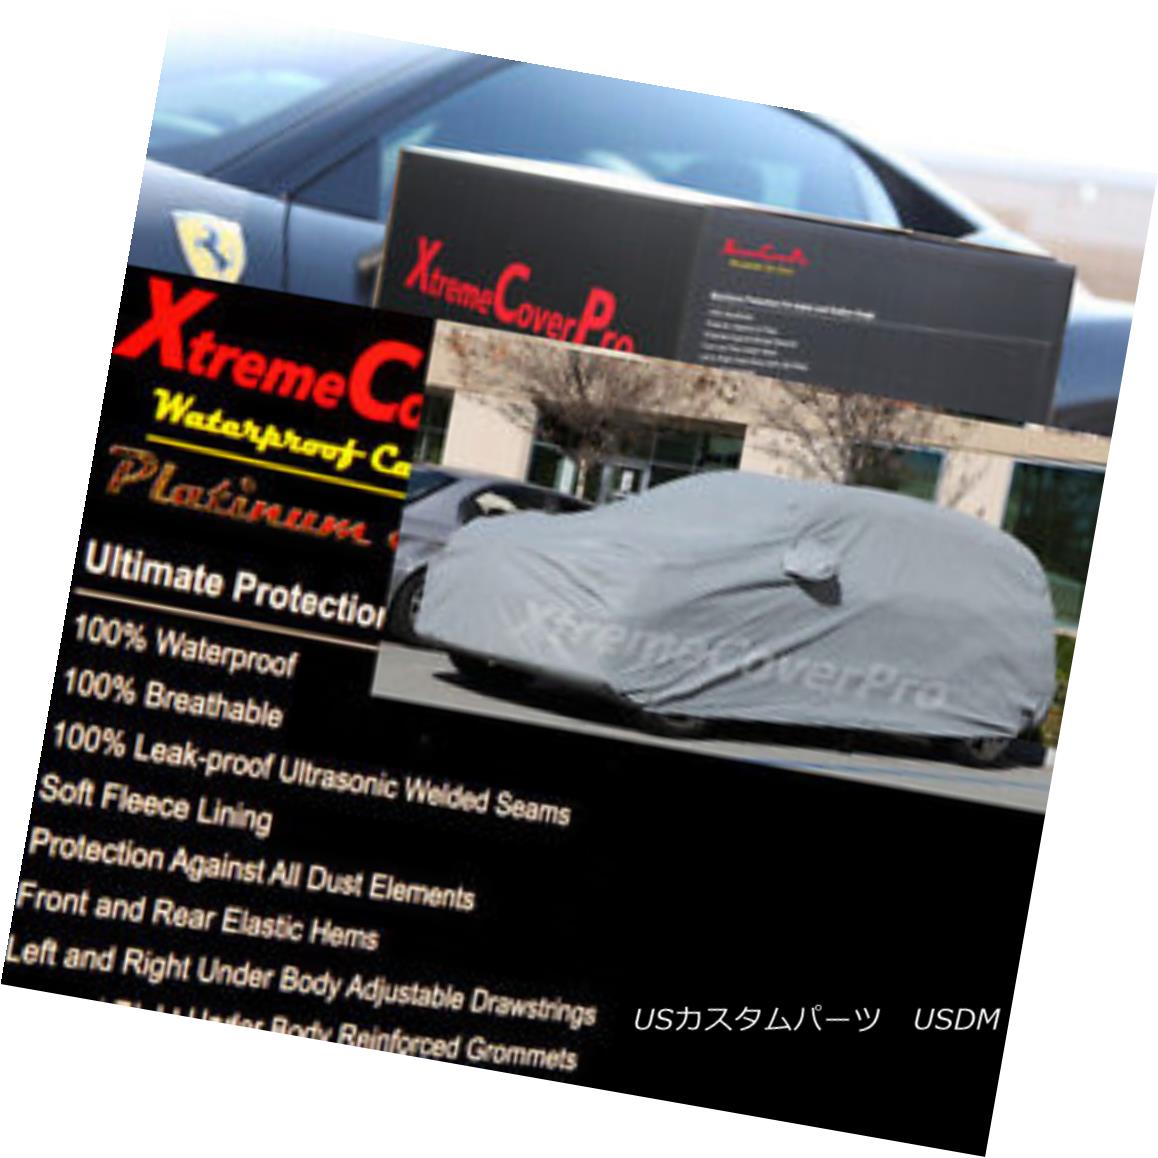 2015 CADILLAC ESCLADE NON-ESV Waterproof Car Cover w/Mirror Pockets - Grayカテゴリカーカバー状態新品メーカー車種発送詳細送料一律 1000円（※北海道、沖縄、離島は省く）商品詳細輸入商品の為、英語表記となります。 Condition: New Type: Full Coverage Cover Warranty: Limited Lifetime through Manufacturer Fit: Universal Fit Mirror Pocekt: Yes Material: 180 g per meter^square Length (ft: 201 - 211 inches Features: Elastic Hem, Grommet Hem, Non-Abrasive Lining, Waterproof, Water Resistant, Two Side Draw String, Underbody Strap, MIRROR POCKET, Cotton Lining Manufacturer Part Number: Does Not Apply Brand: XTREMECOVERPRO FITMENT: PLEASE REFER TO AUCTION TITLE MATCHES YOUR VEHICLE Primary Color: Gray Color: Gray Length (ft.): 171 - 181 inches※以下の注意事項をご理解頂いた上で、ご入札下さい※■海外輸入品の為、NC,NRでお願い致します。■フィッテングや車検対応の有無については、画像と説明文よりお客様の方にてご判断をお願いしております。■USのカスタムパーツは国内の純正パーツを取り外した後、接続コネクタが必ずしも一致するとは限らず、加工が必要な場合がございます。■商品説明文中に英語にて”保障”に関する記載があっても適応はされませんので、ご理解ください。■初期不良（到着より7日以内）のみ保証対象とします。ただし、取り付け後は、保証対象外とします。■海外倉庫から到着した製品を、再度国内で検品を行い、日本郵便または佐川急便にて発送となります。■お届けまでには、2〜3週間程頂いております。ただし、天候次第で多少遅れが発生する場合もあります。■商品落札後のお客様のご都合によるキャンセルはお断りしておりますが、商品落札金額の30％の手数料をいただいた場合のみお受けいたします。■他にもUSパーツを多数出品させて頂いておりますので、ご覧頂けたらと思います。■USパーツの輸入代行も行っておりますので、ショップに掲載されていない商品でもお探しする事が可能です!!お気軽にお問い合わせ下さい。&nbsp;